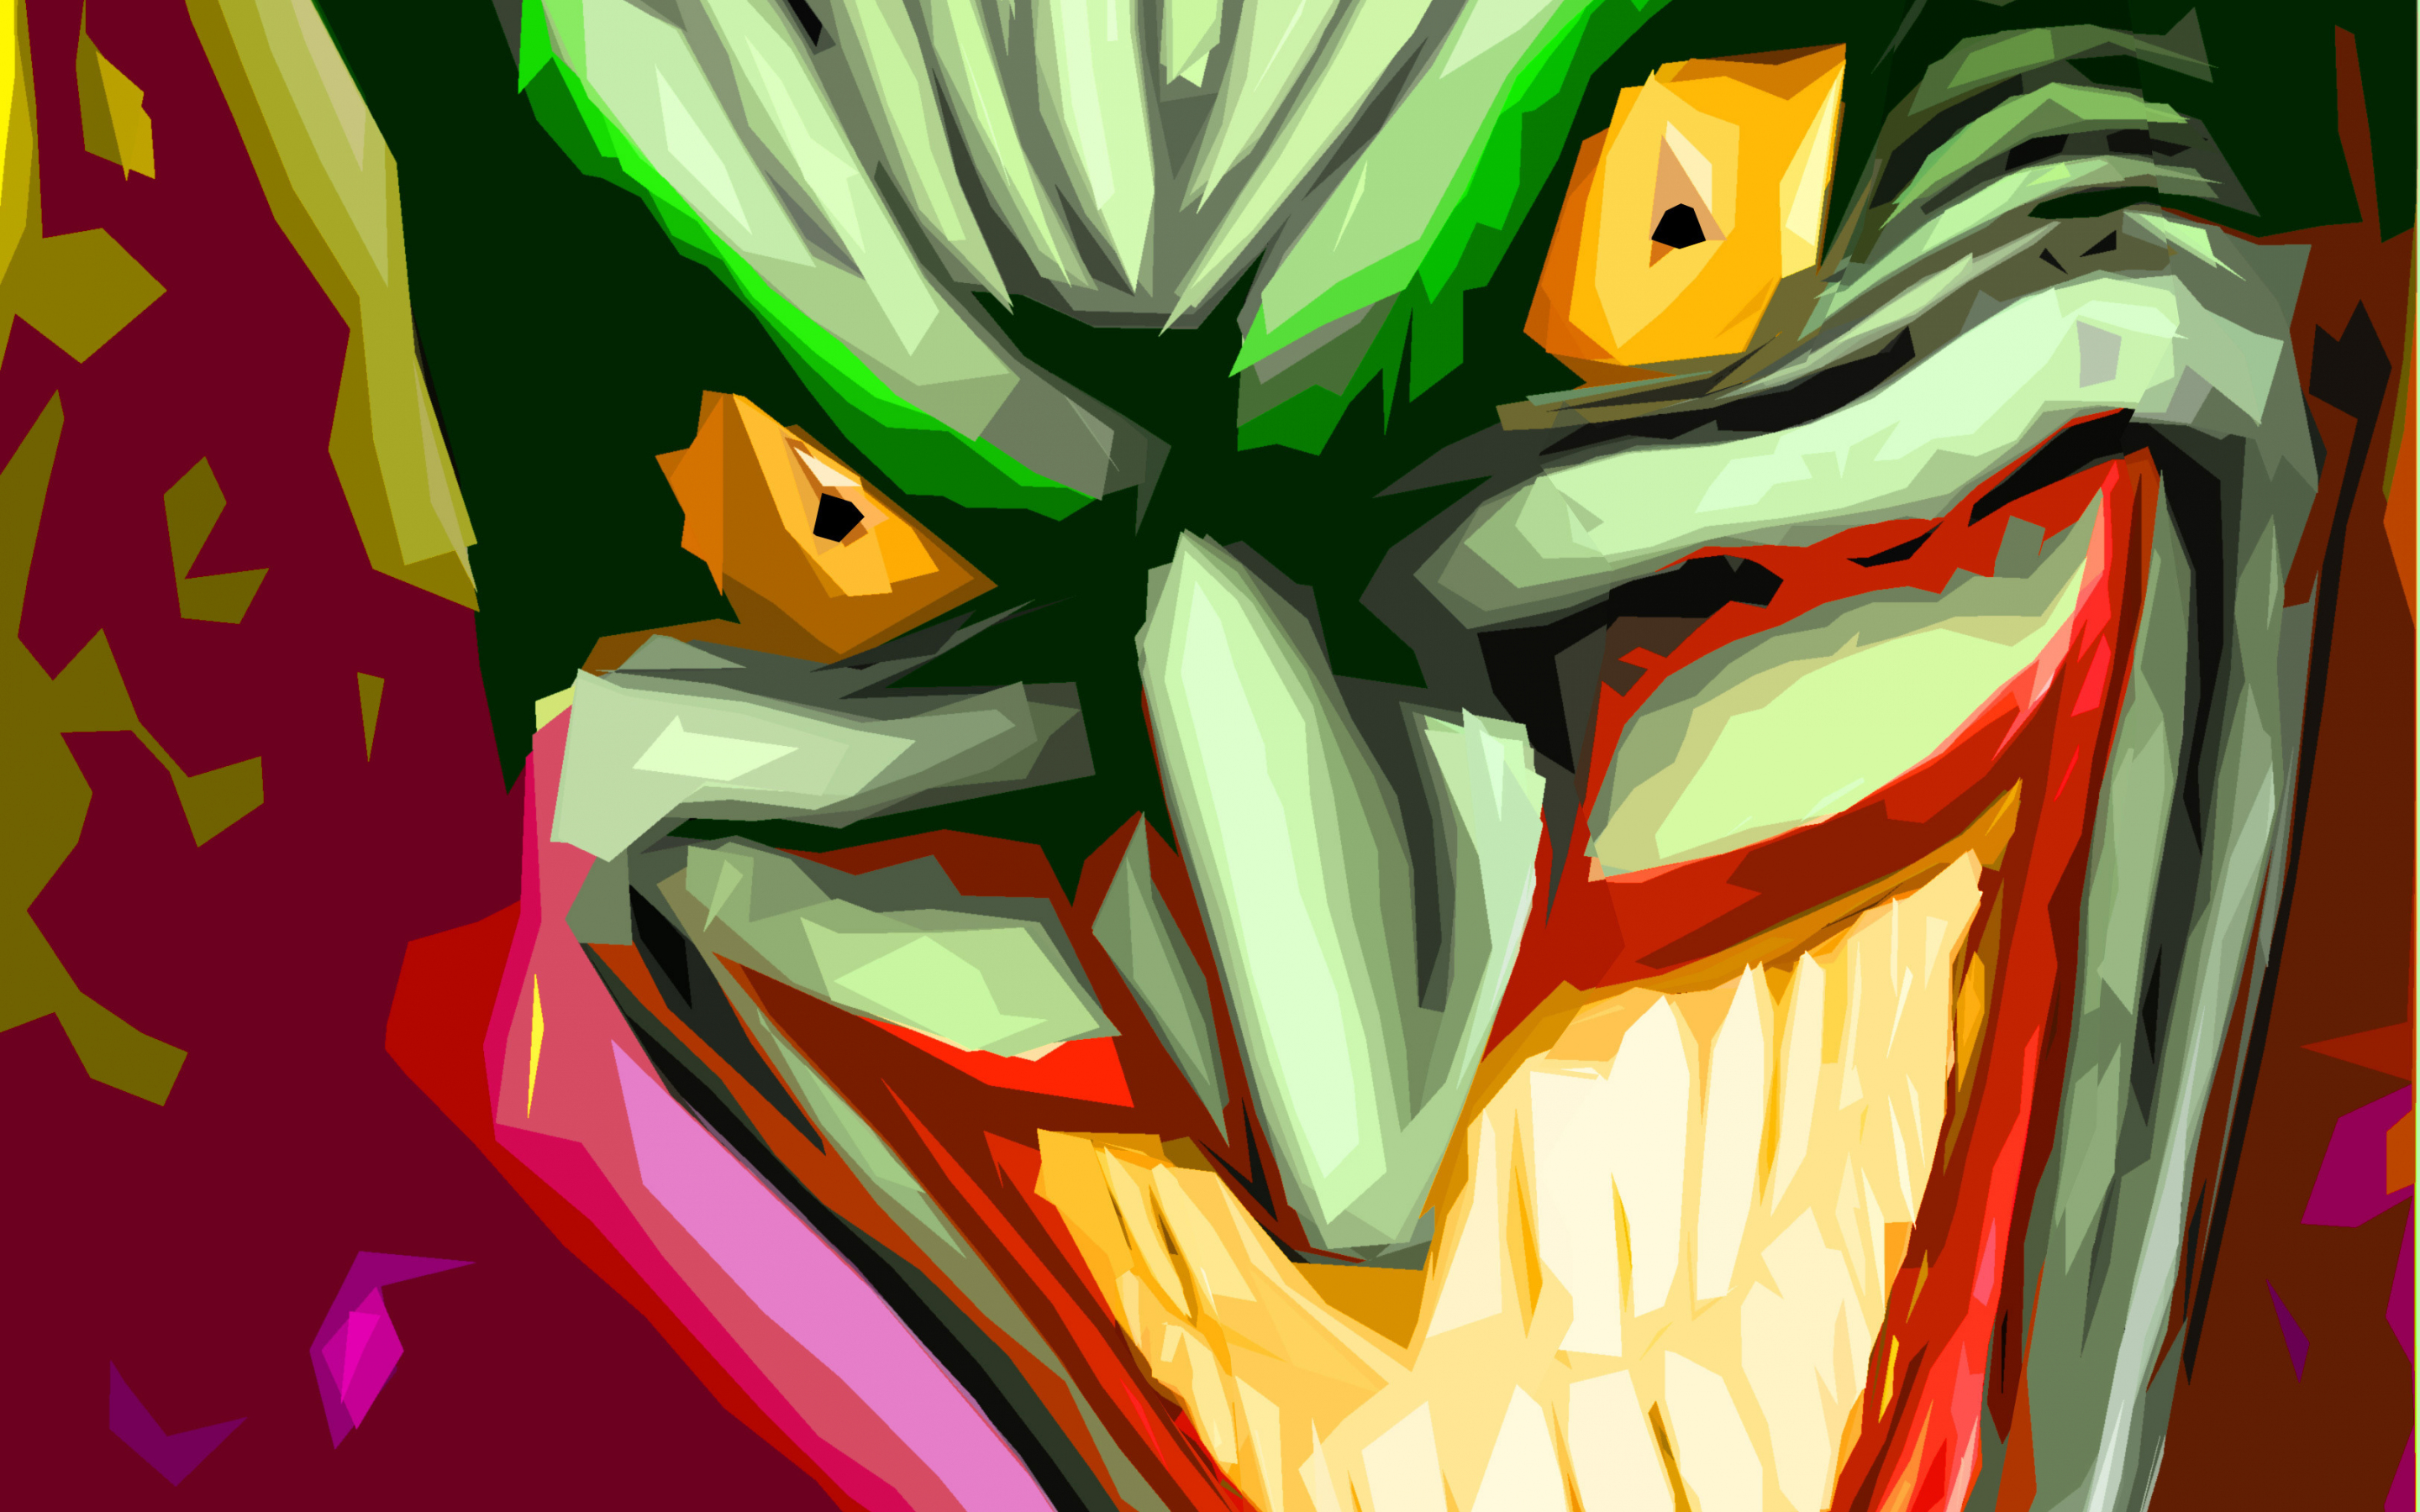 Joker, clown, villain, comics, art, 2880x1800 wallpaper